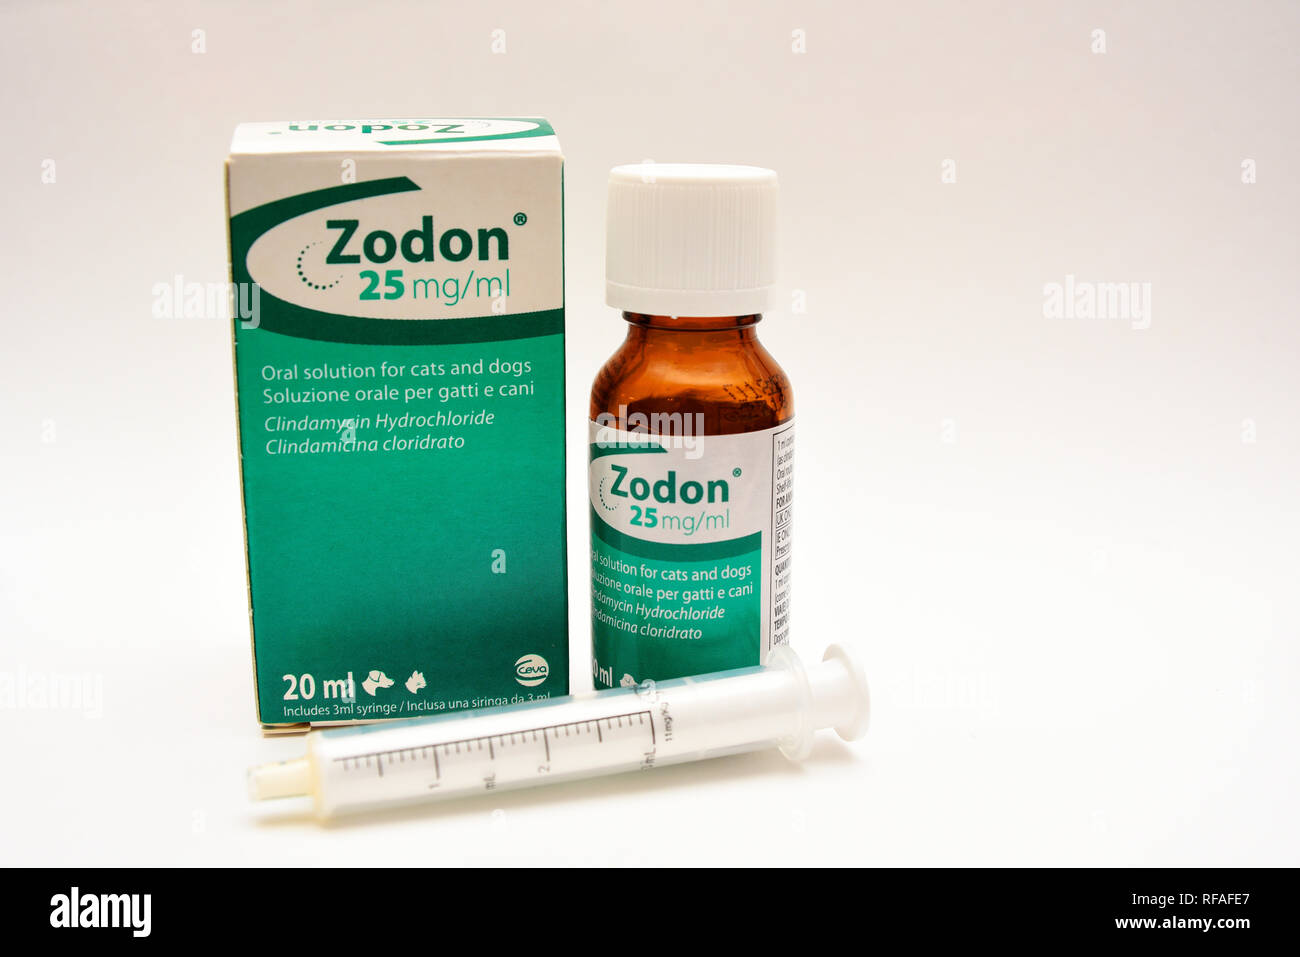 Zodon soluzione orale per animali domestici ferite infette da Ceva, Francia basato fabbricante di prodotti veterinari. Mediche animali per il trattamento di disturbi della pelle Foto Stock